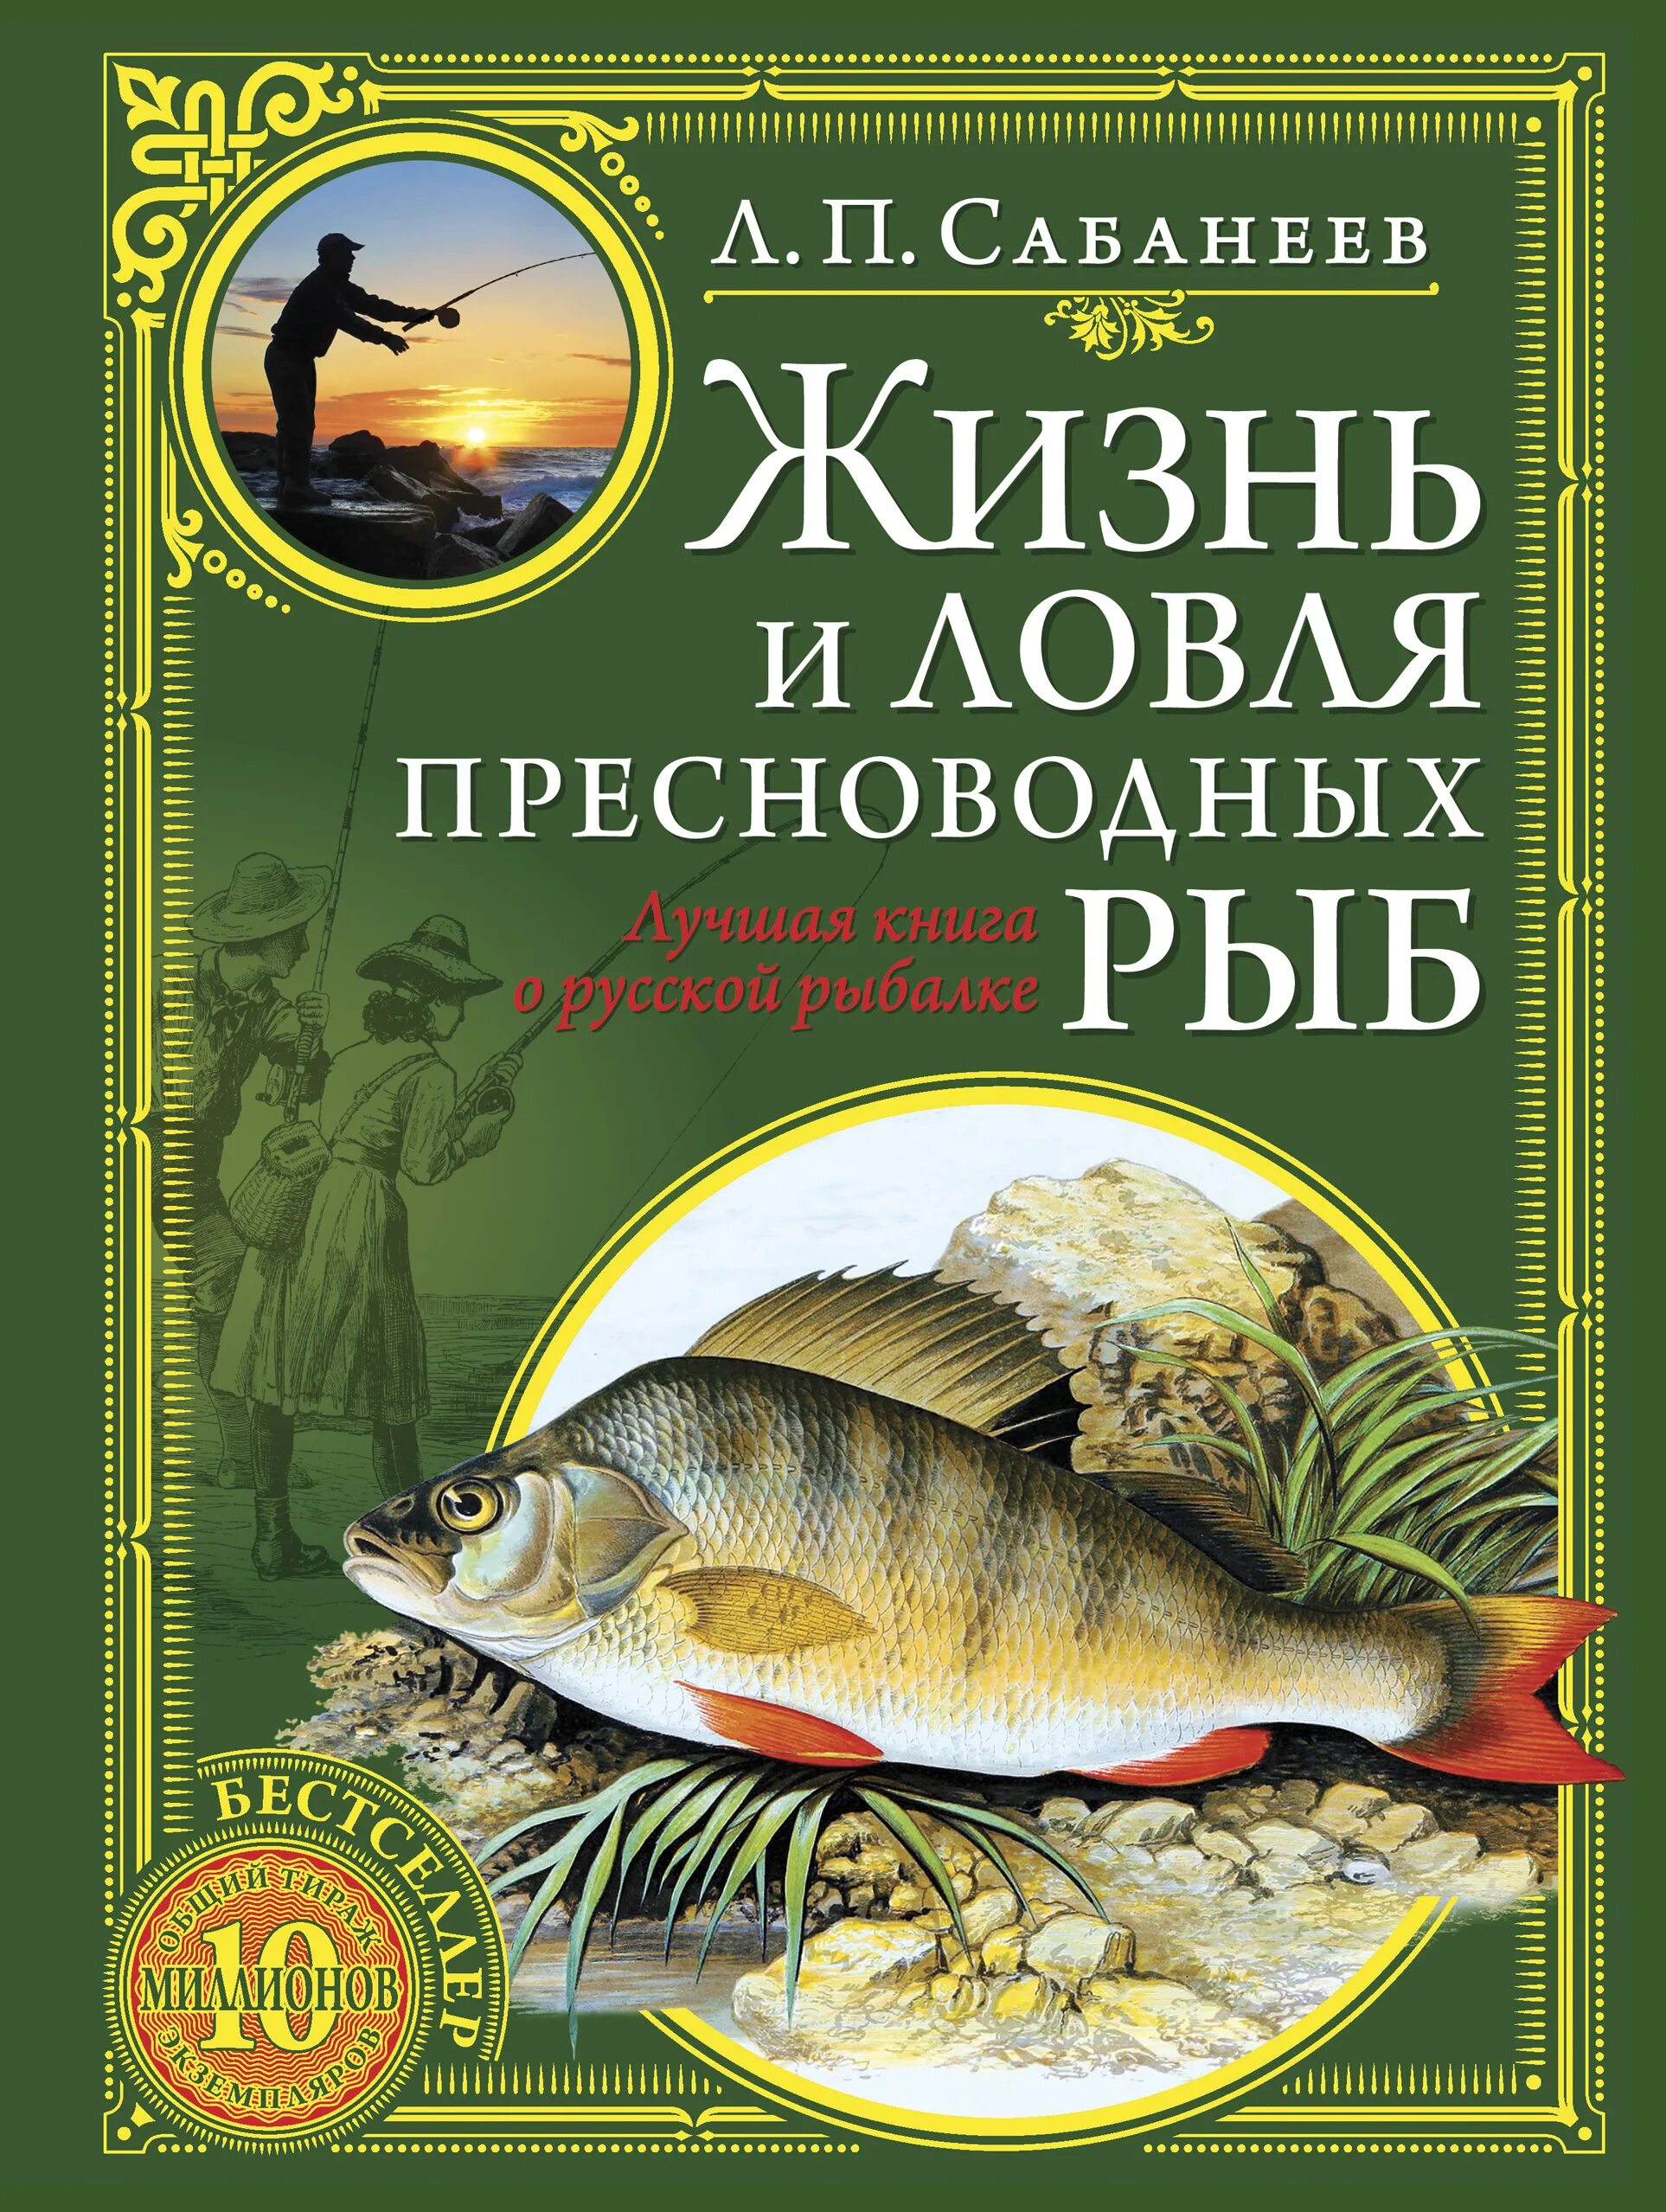 Жизнь пресноводных рыб сабанеев. Сабанеев жизнь и ловля пресноводных рыб книга.